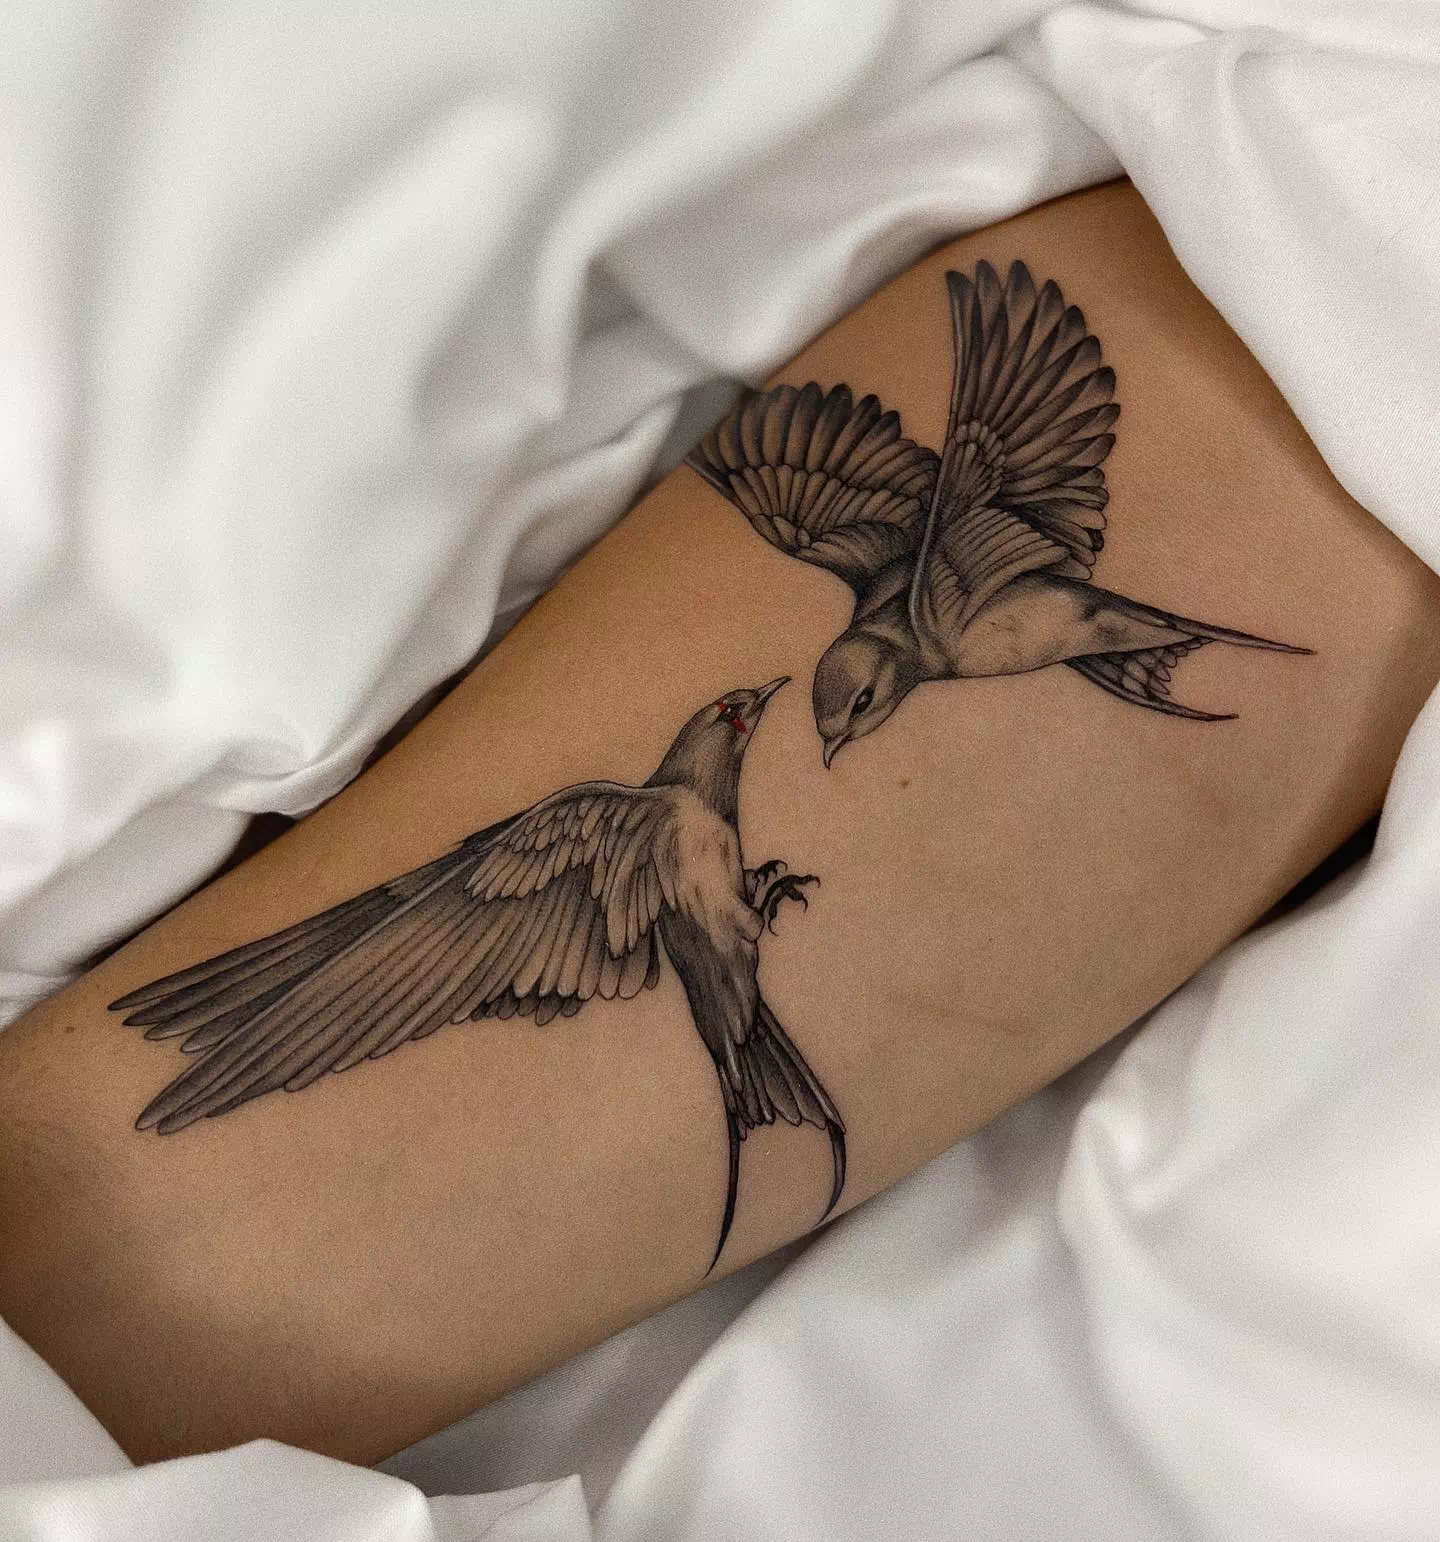 Vogel-Tattoos in Schwarz und Weiß 2